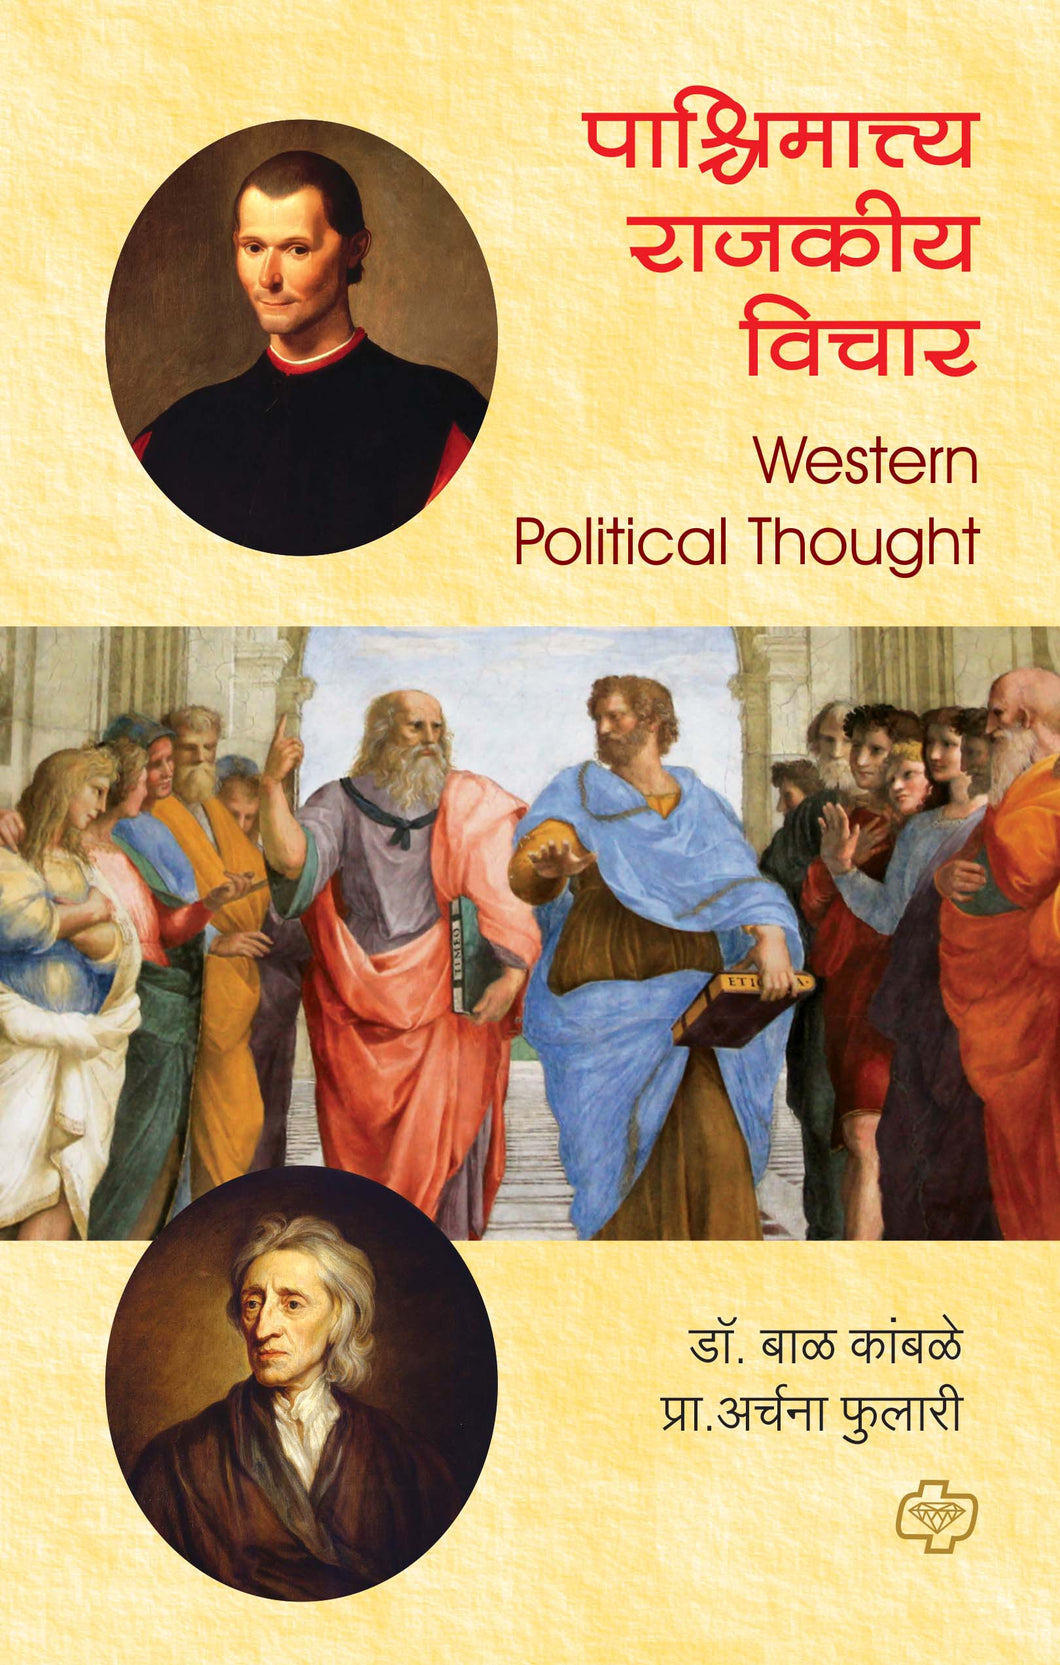 पाश्चिमात्त्य राजकीय विचार (Western Political Thought) (सत्र ३)